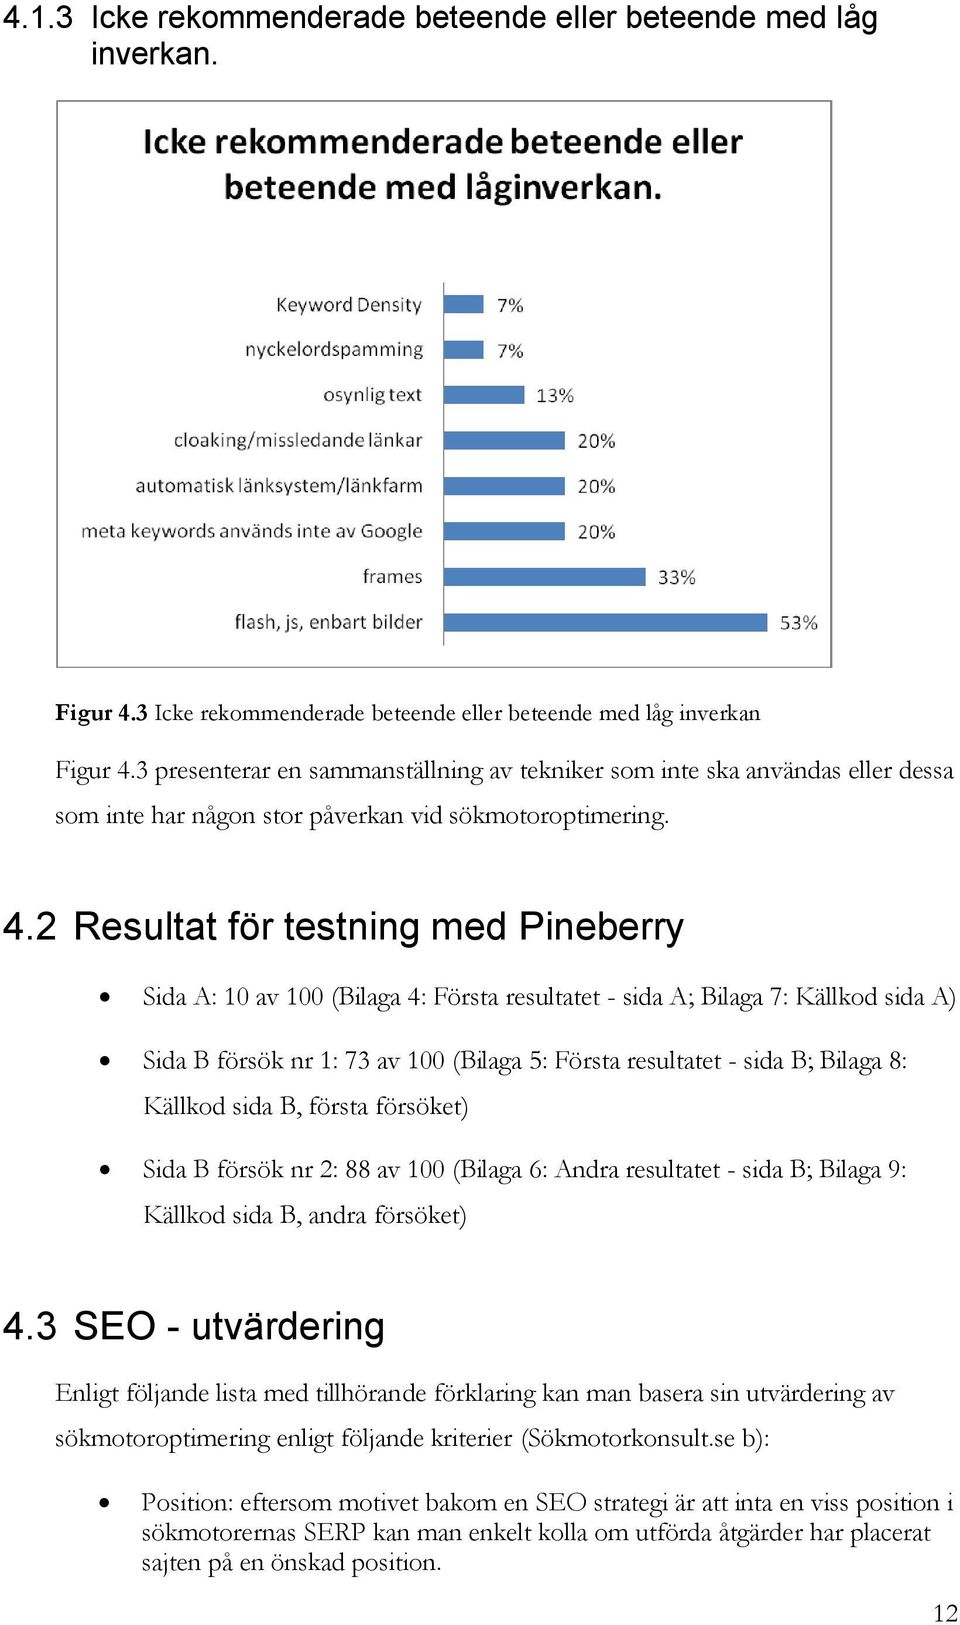 2 Resultat för testning med Pineberry Sida A: 10 av 100 (Bilaga 4: Första resultatet - sida A; Bilaga 7: Källkod sida A) Sida B försök nr 1: 73 av 100 (Bilaga 5: Första resultatet - sida B; Bilaga 8: